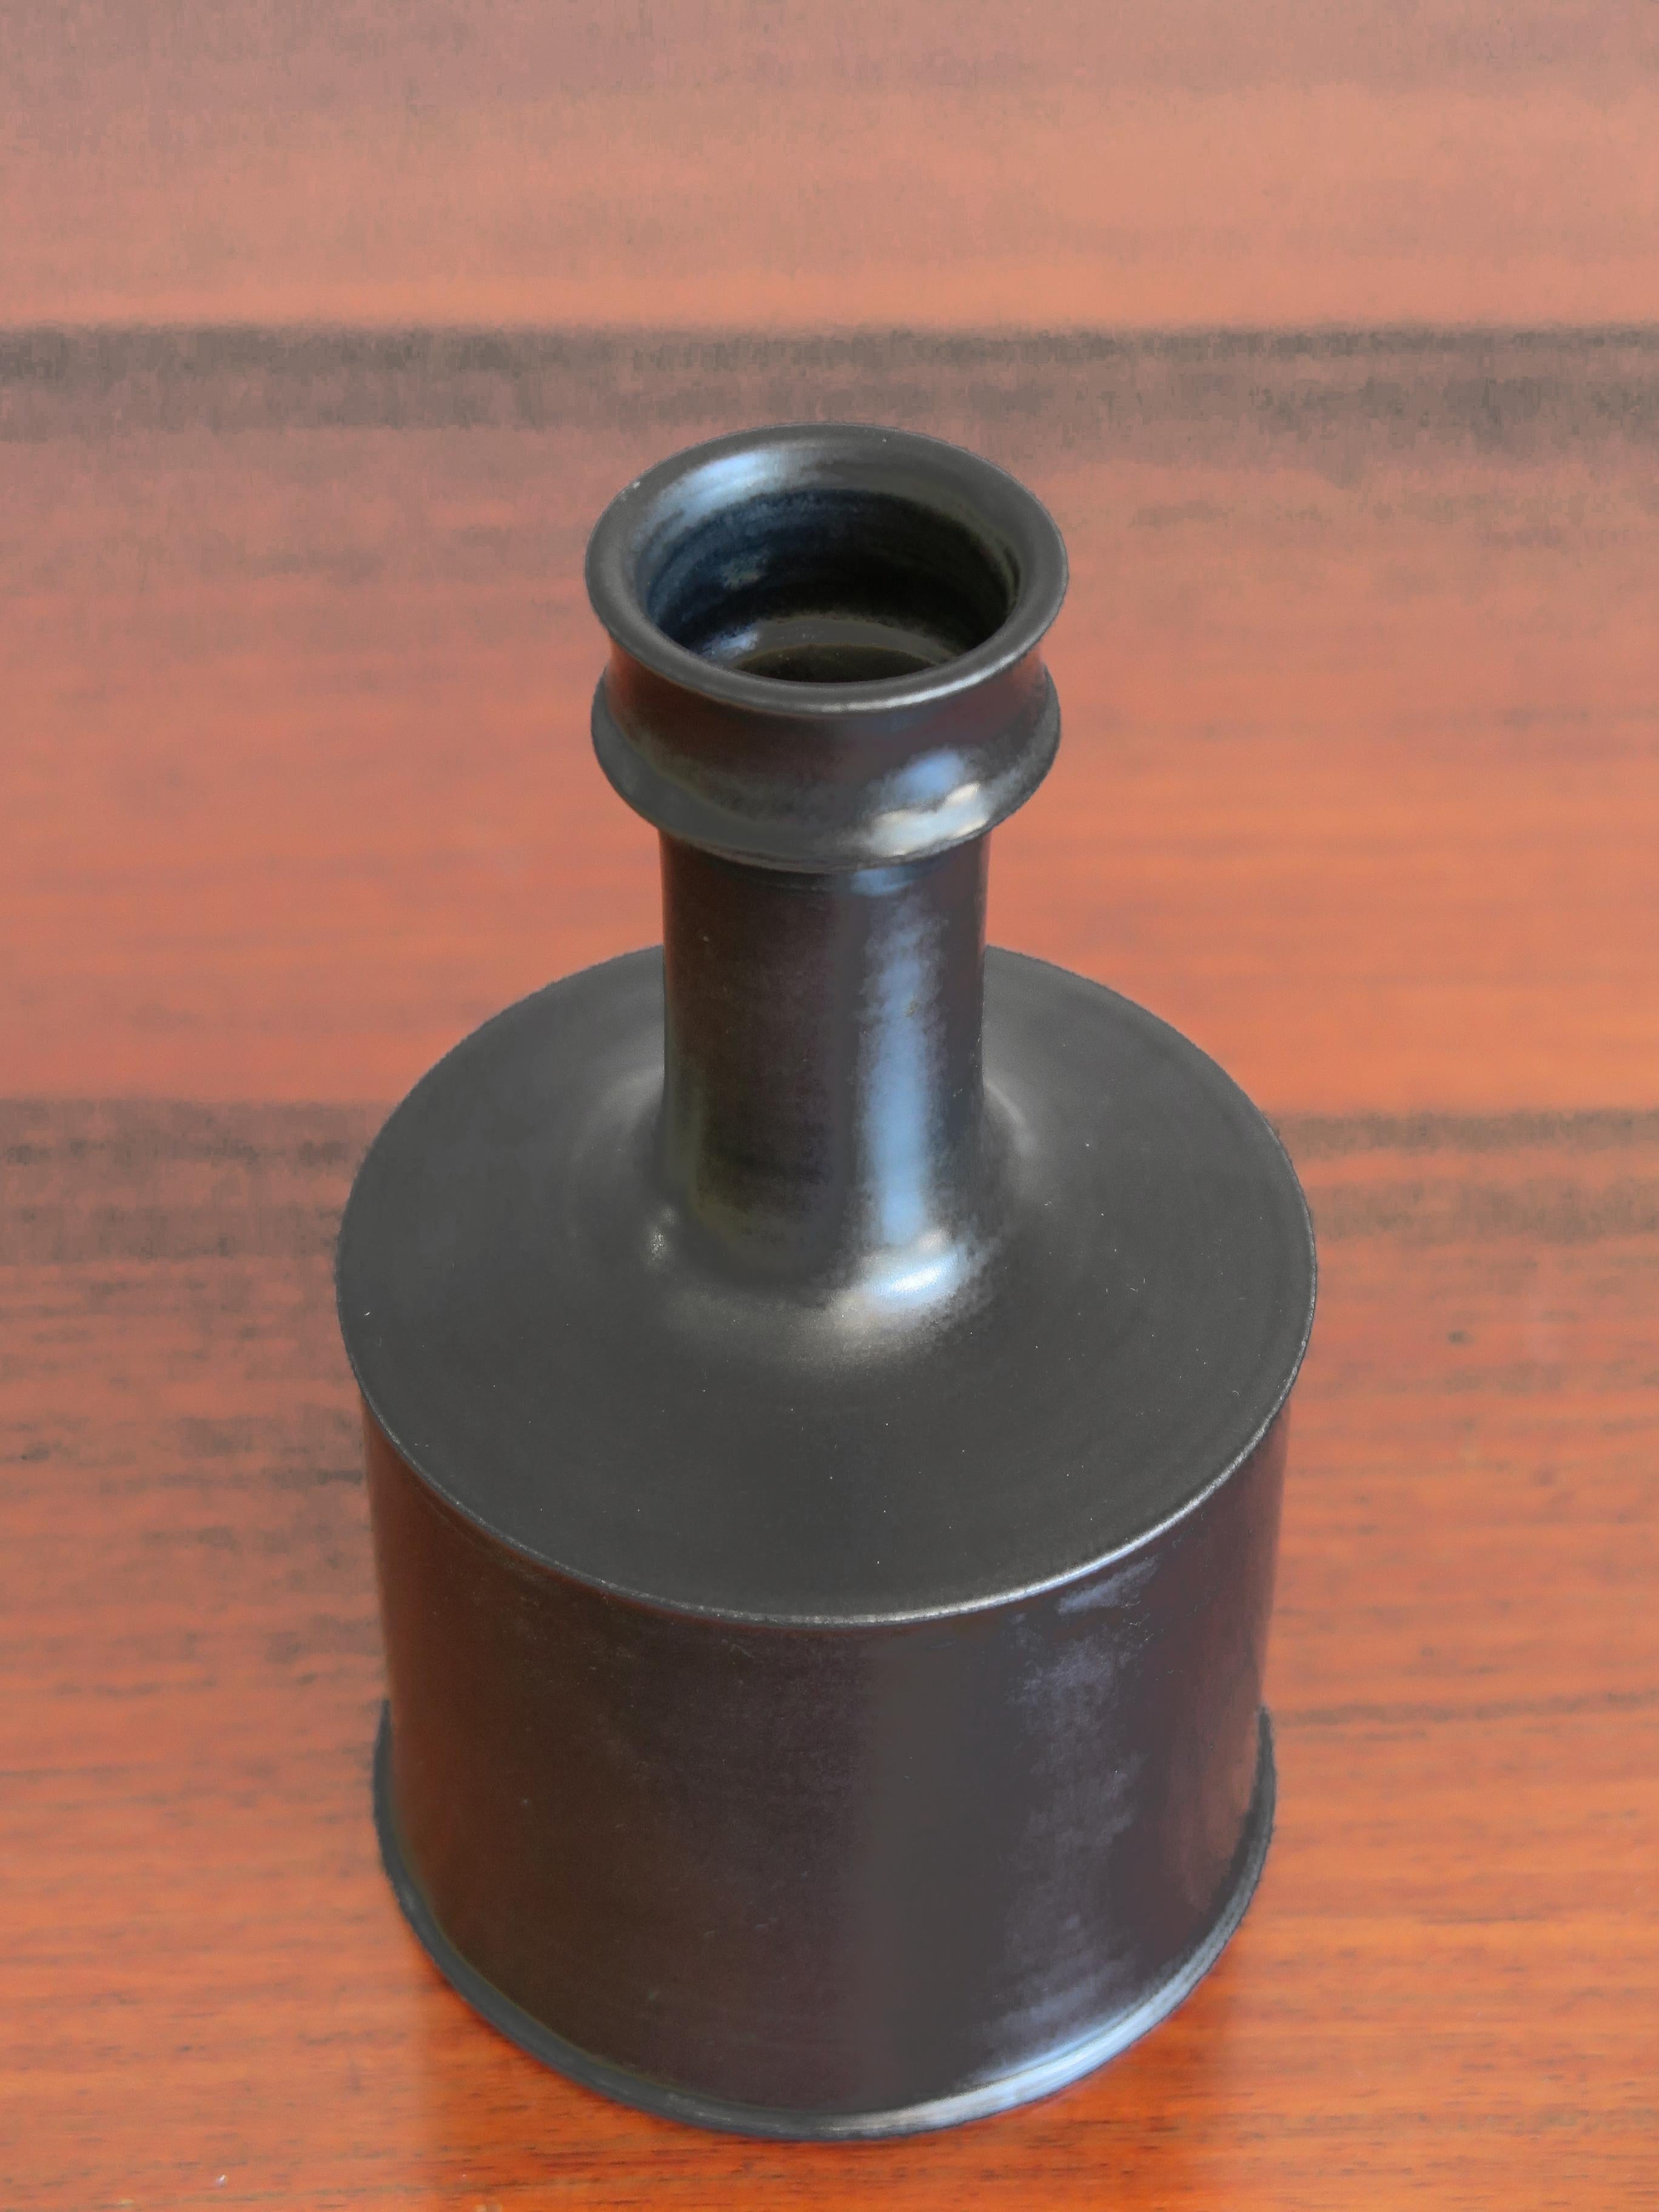 Vase bouteille italien en céramique noire conçu par l'artiste italien Franco Bucci, Pesaro ; céramique noire émaillée, marqué d'un symbole graphique sous la base, années 1970.